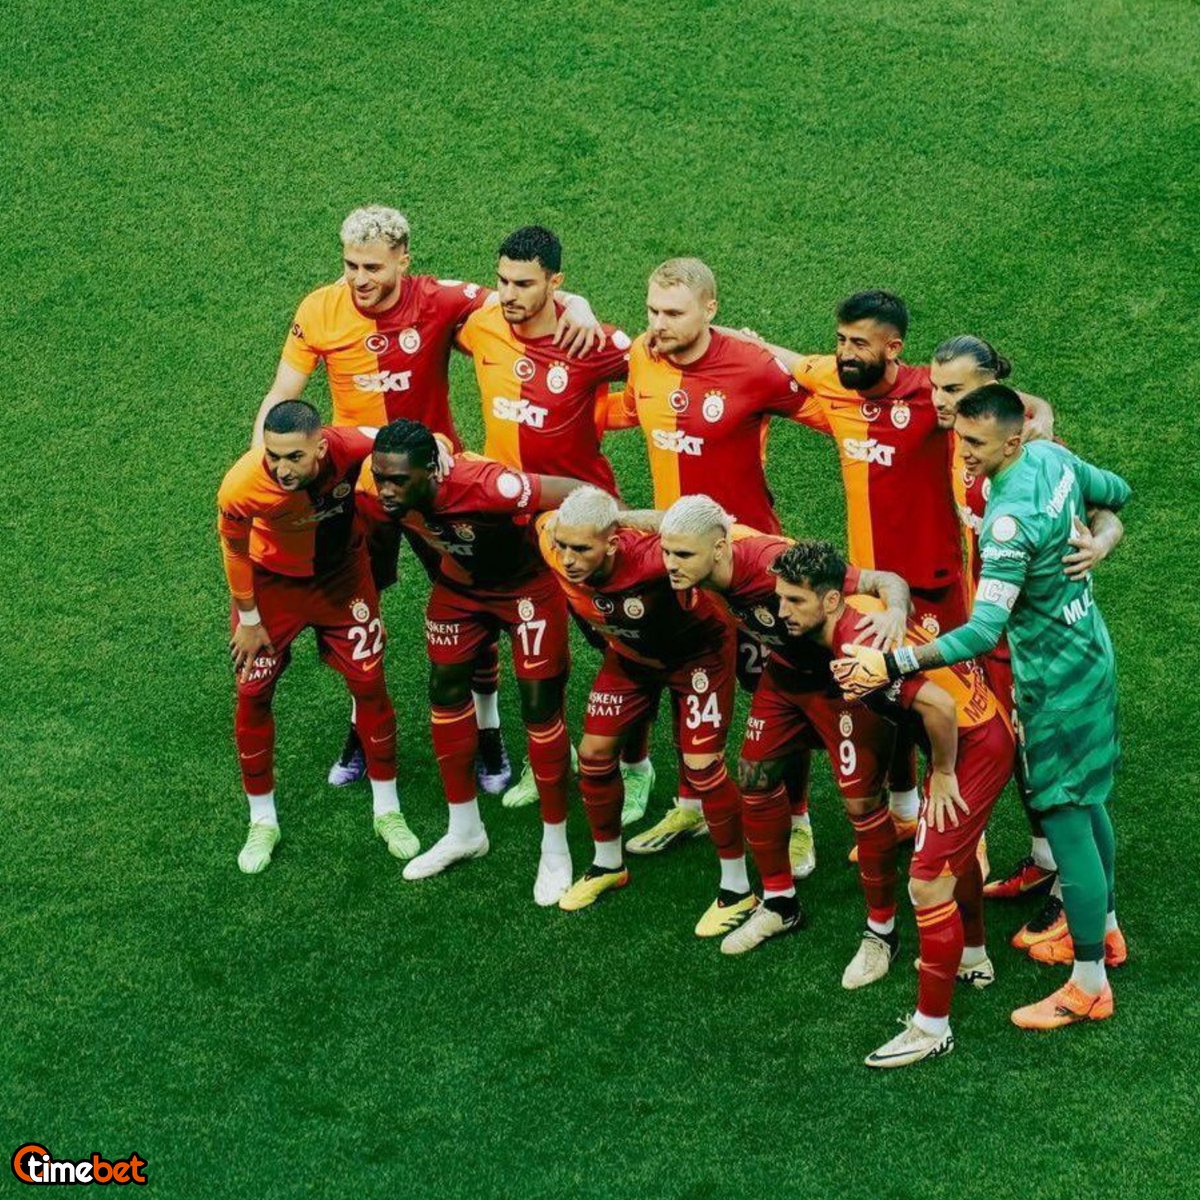 BİLGİ: Galatasaray, son 40 yılda 17 kez çıktığı şampiyonluk maçlarının hiç birinde mağlup olmayarak şampiyonluğa ulaştı.